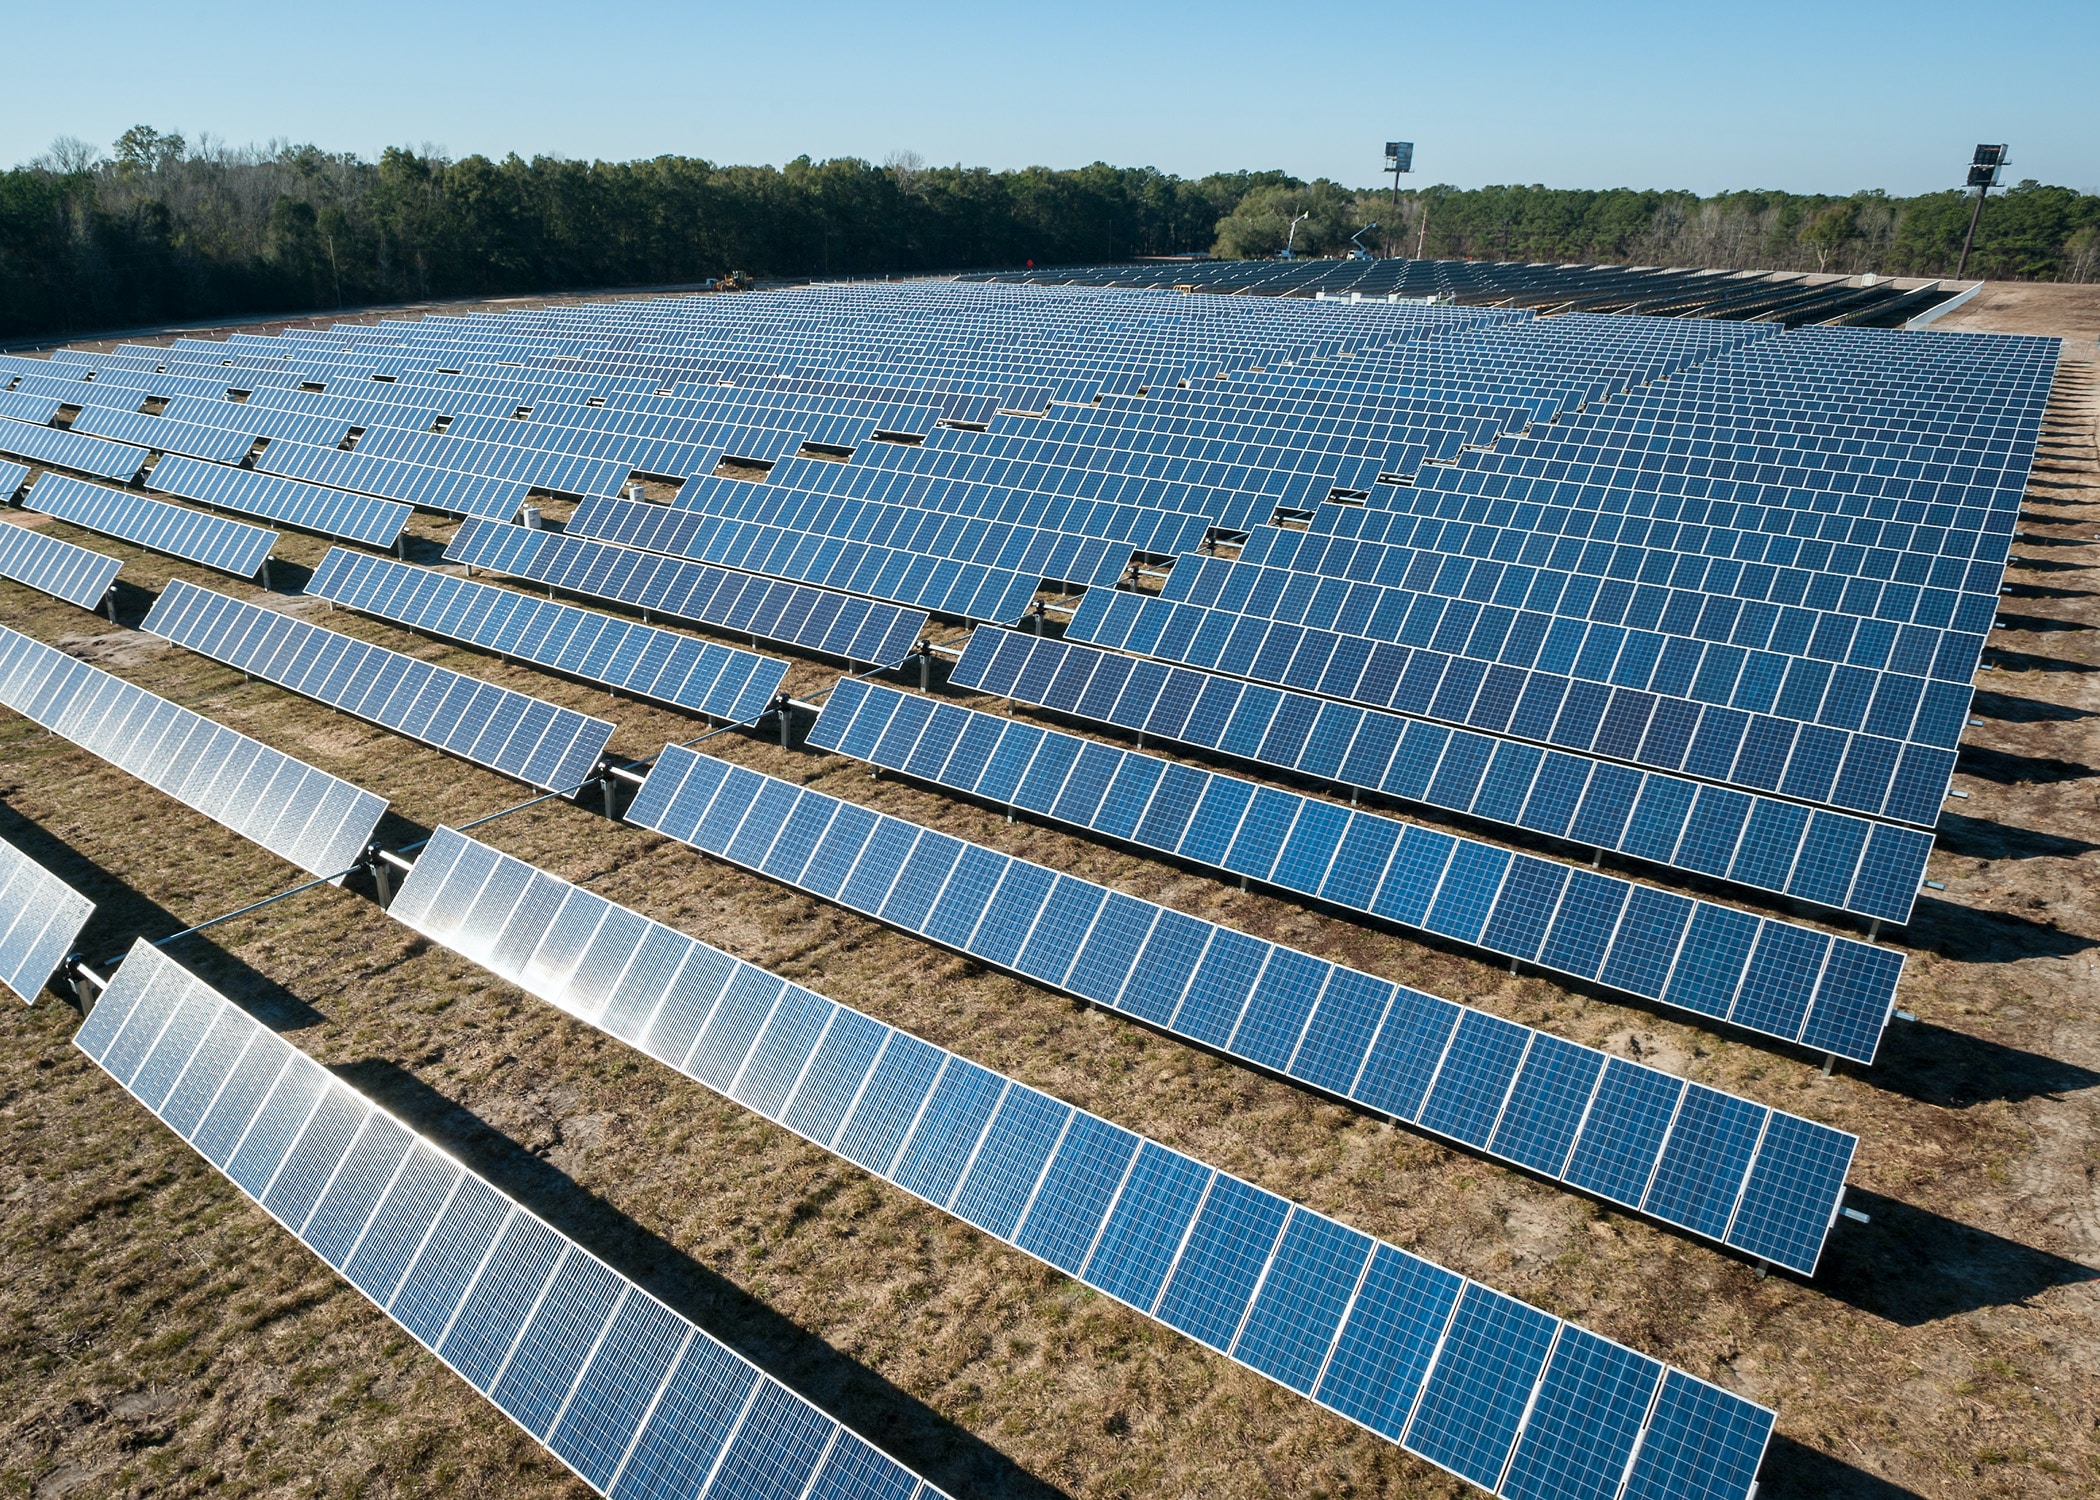 Do solar panel farms make money